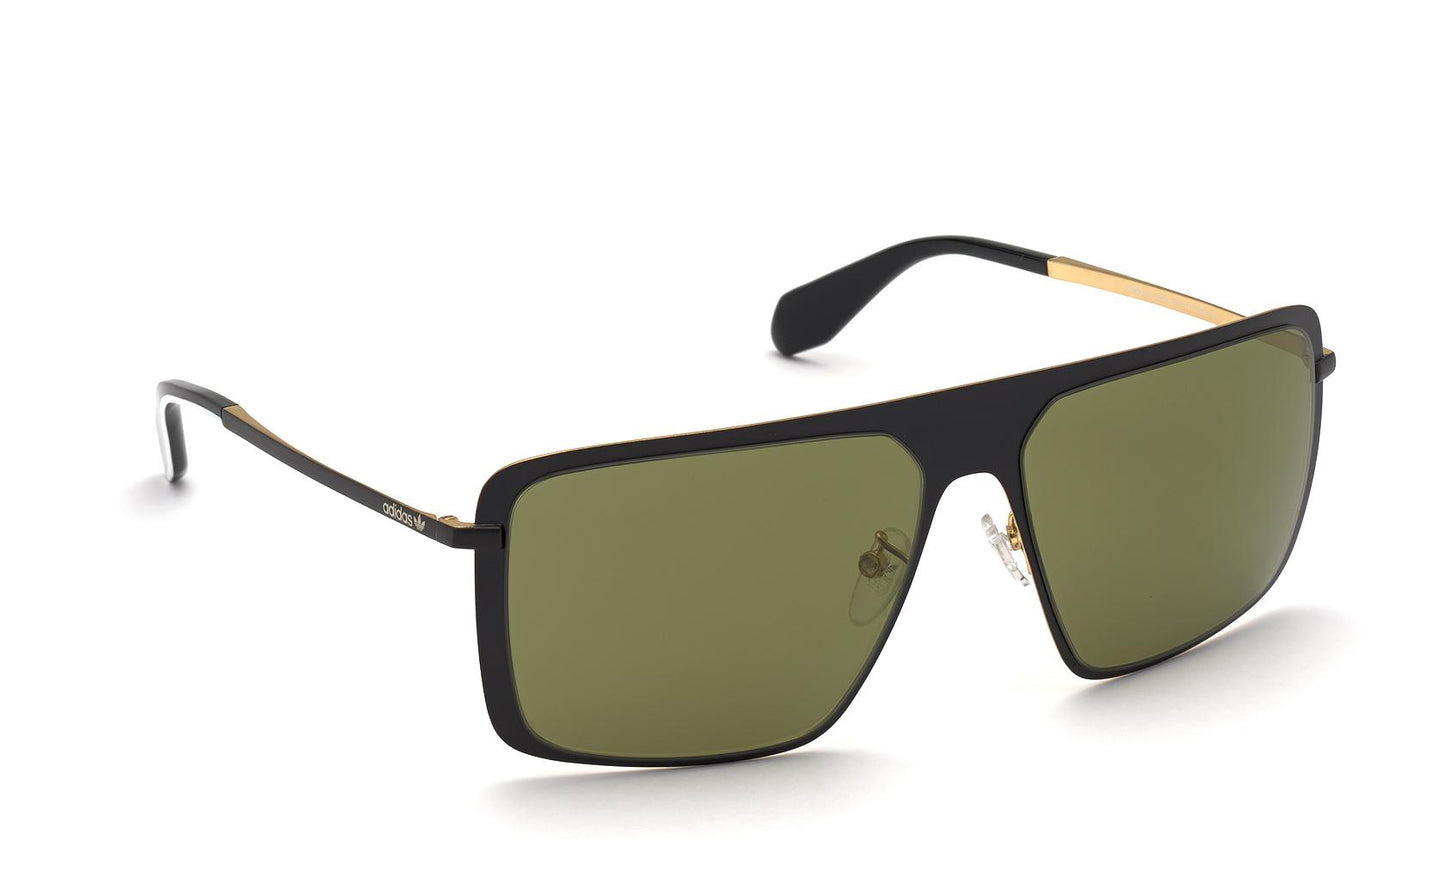 Adidas Originals Sunglasses OR0036 02Q